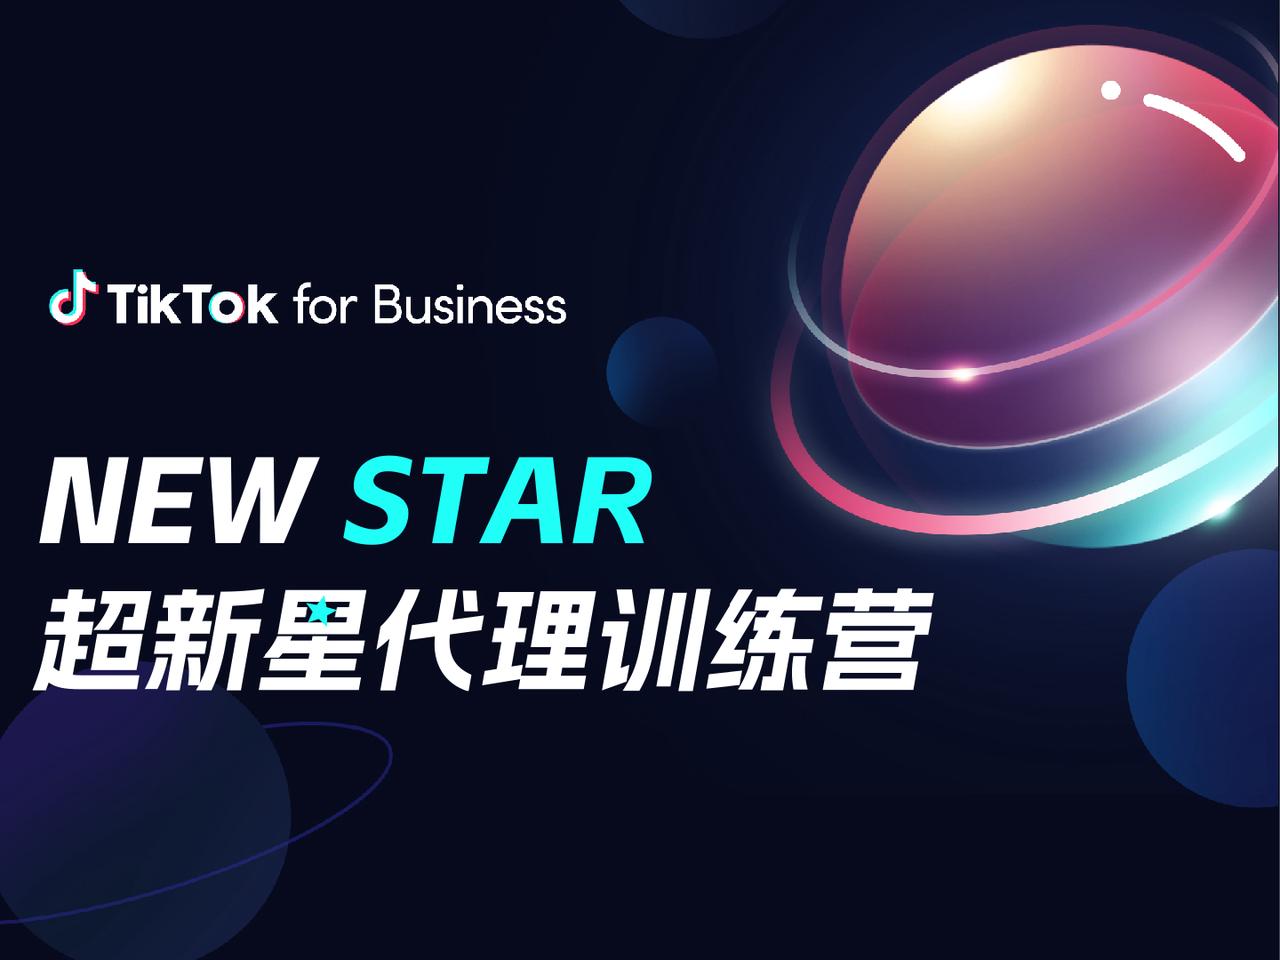 TikTok for Business 授权代理商开启二期招募